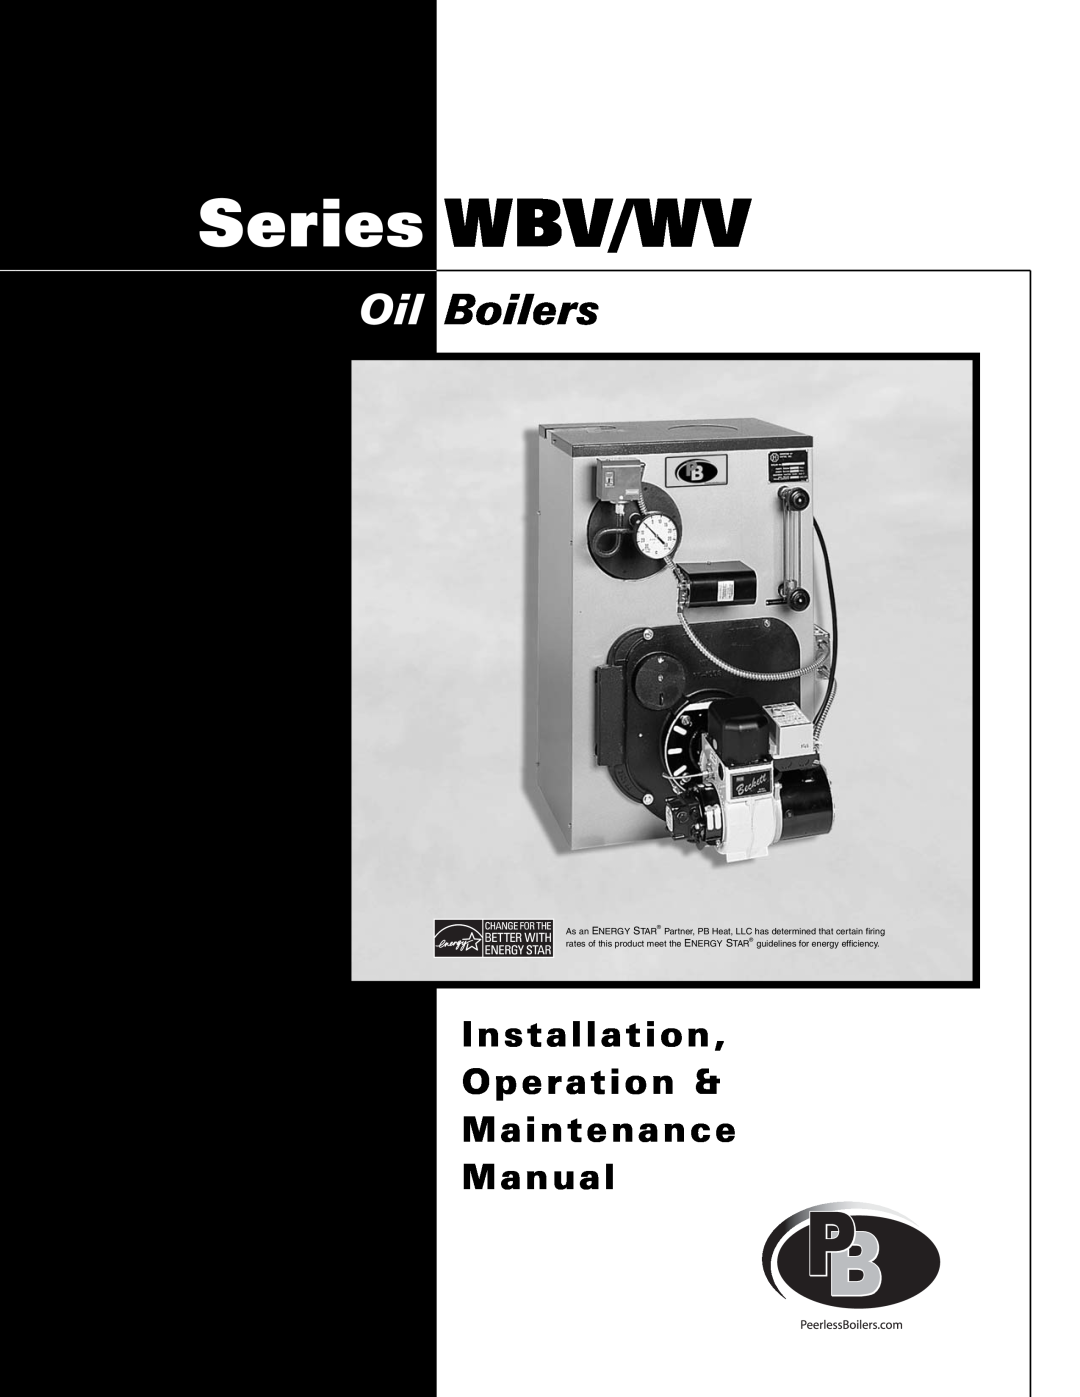 PB Heat WBV Series, WV Series manual Oil Boilers, Installation Operation & Maintenance Manual, Series WBV/WV 